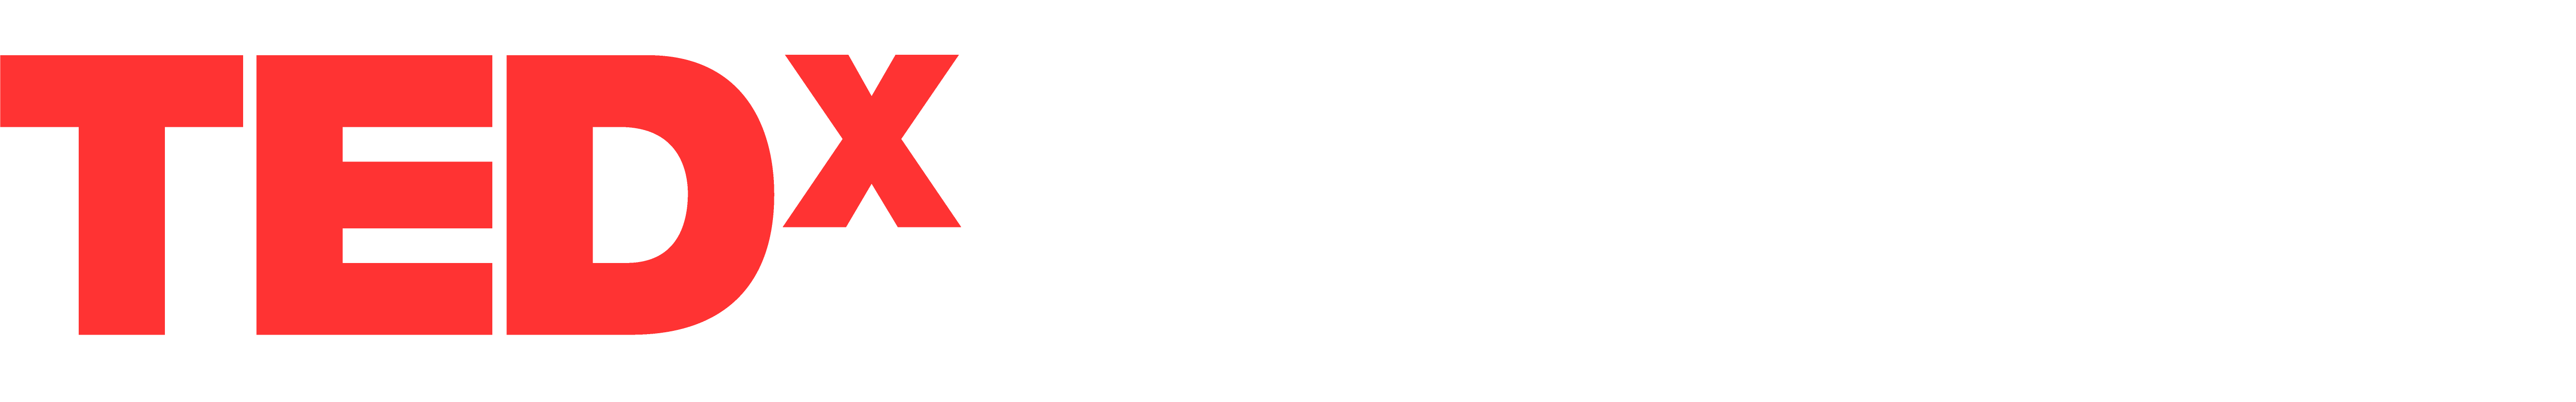 tedxleverano logo